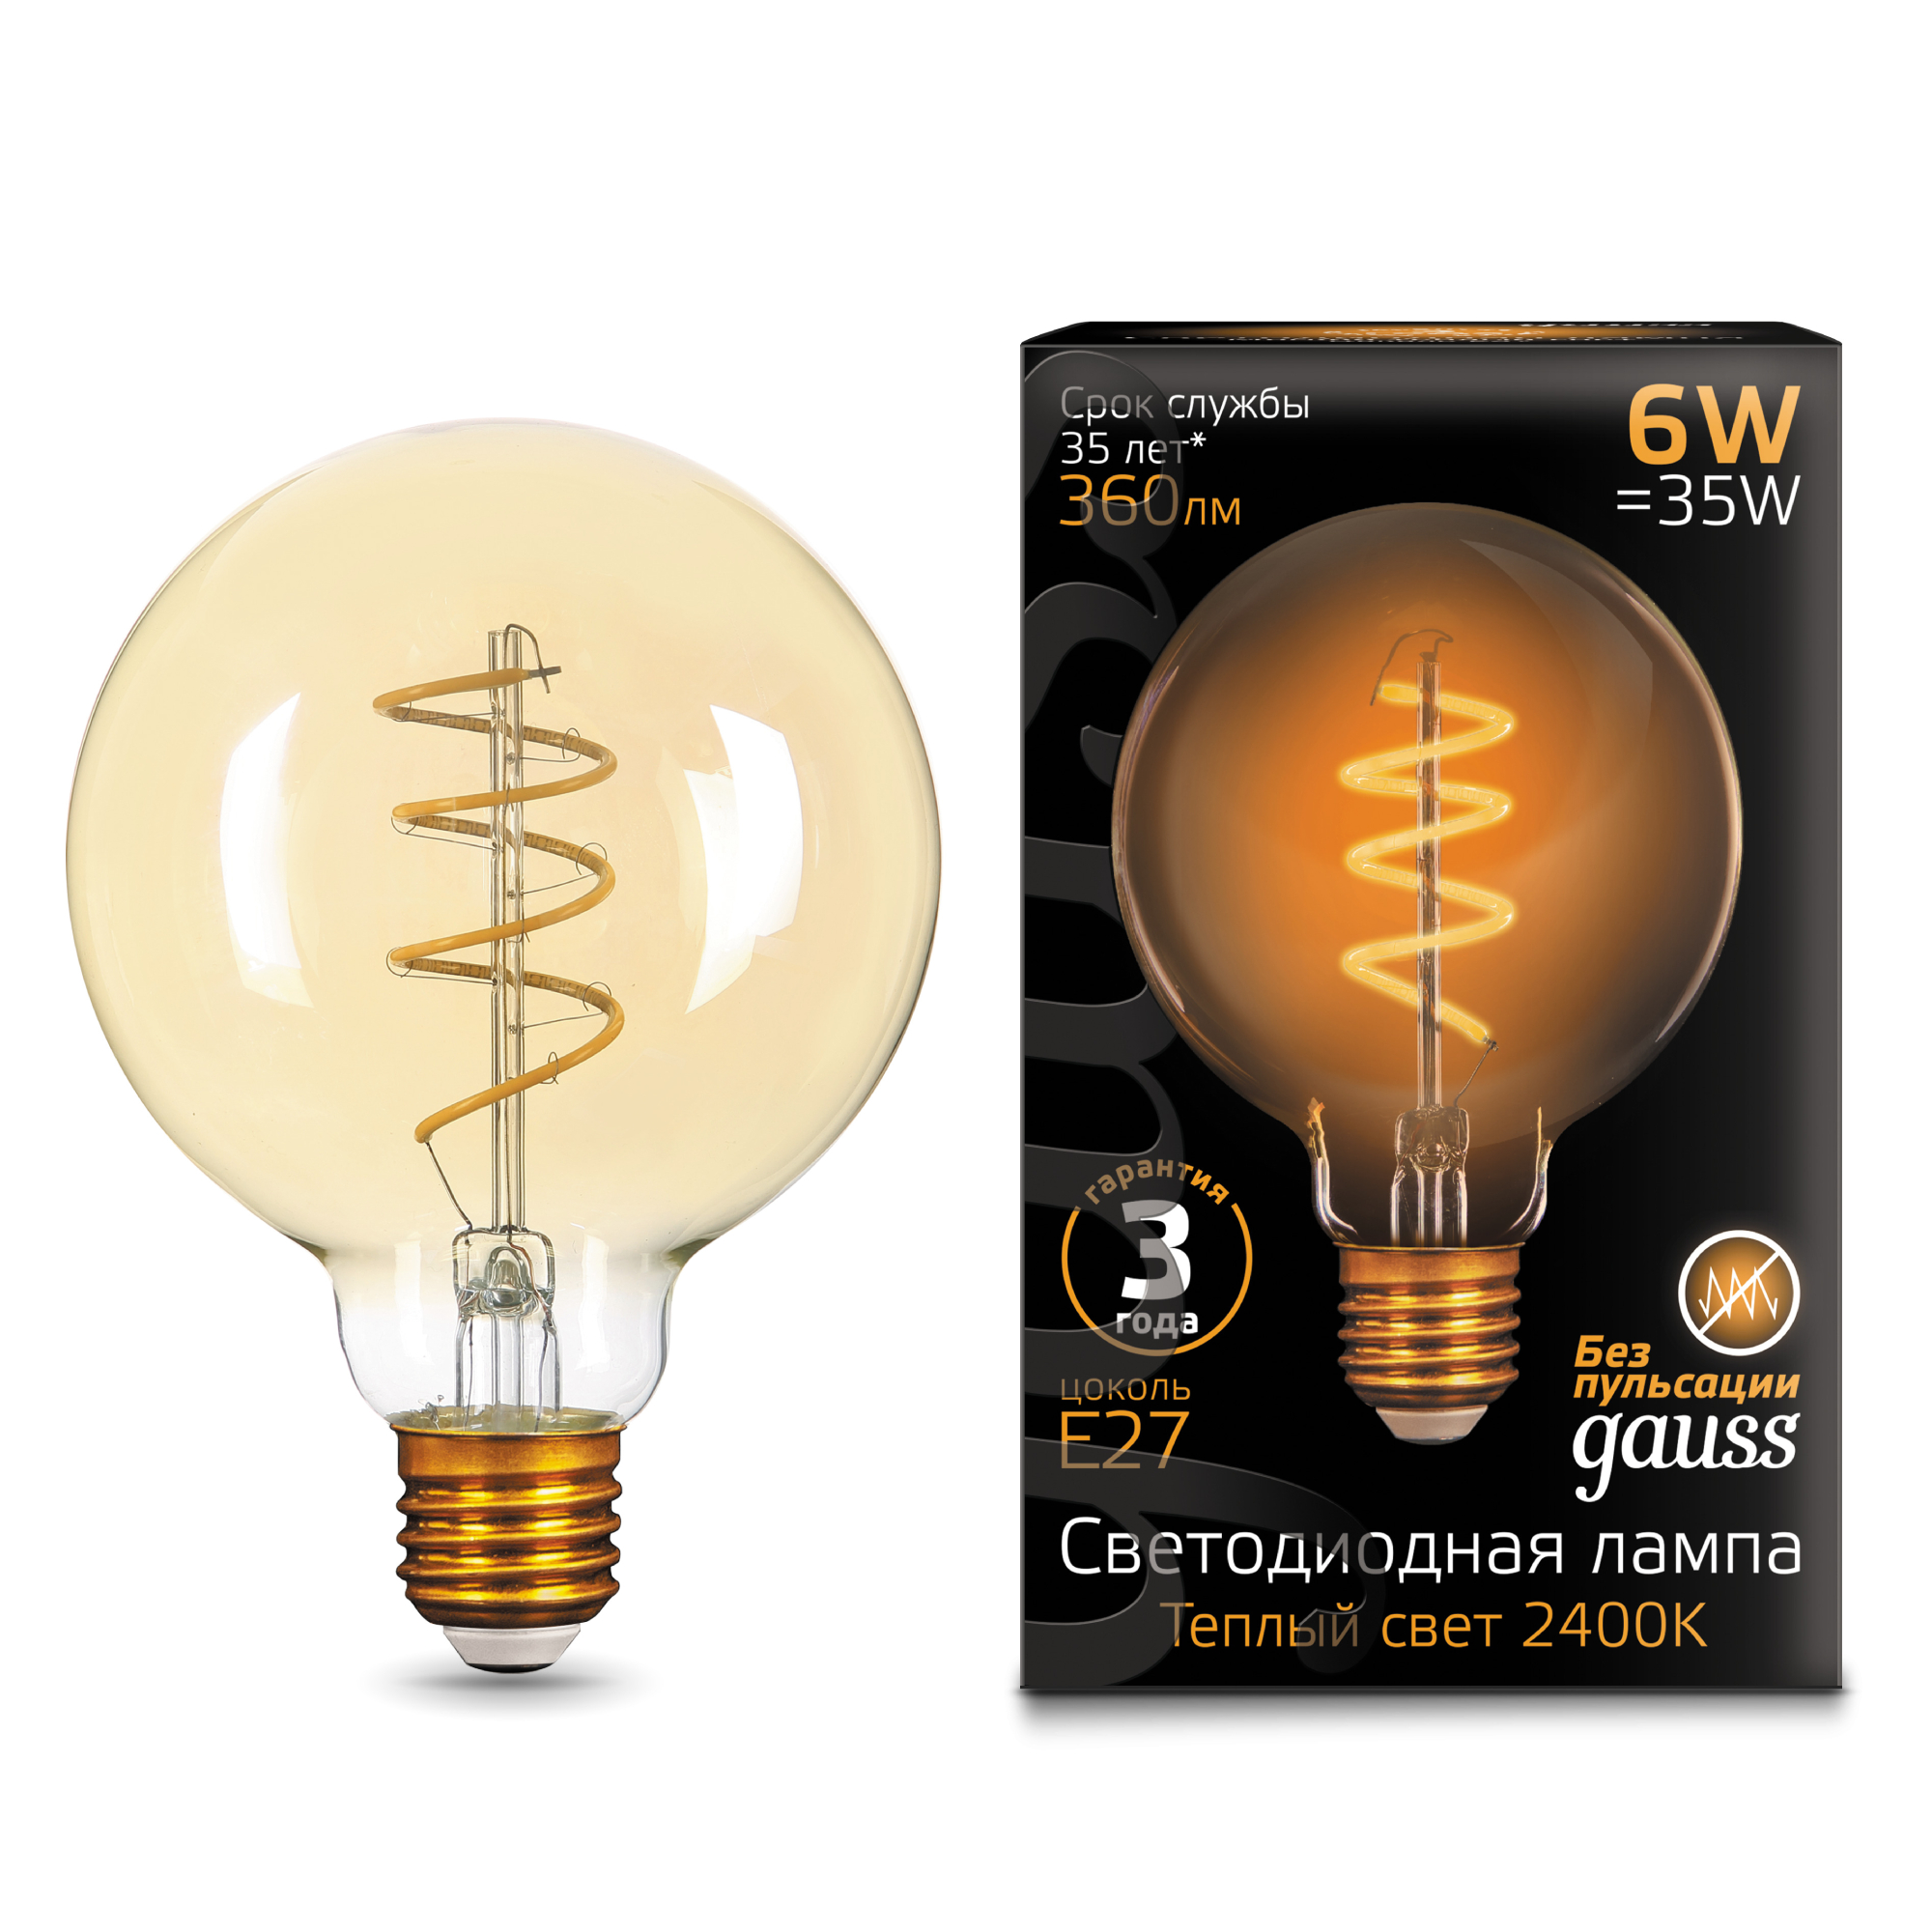 Лампа Gauss LED Filament G95 Flexible E27 6W Golden 360lm 2400К 1/20 светильники gauss лампа filament led диммируемаяgolden е27 g95 6w 620lm 2400к